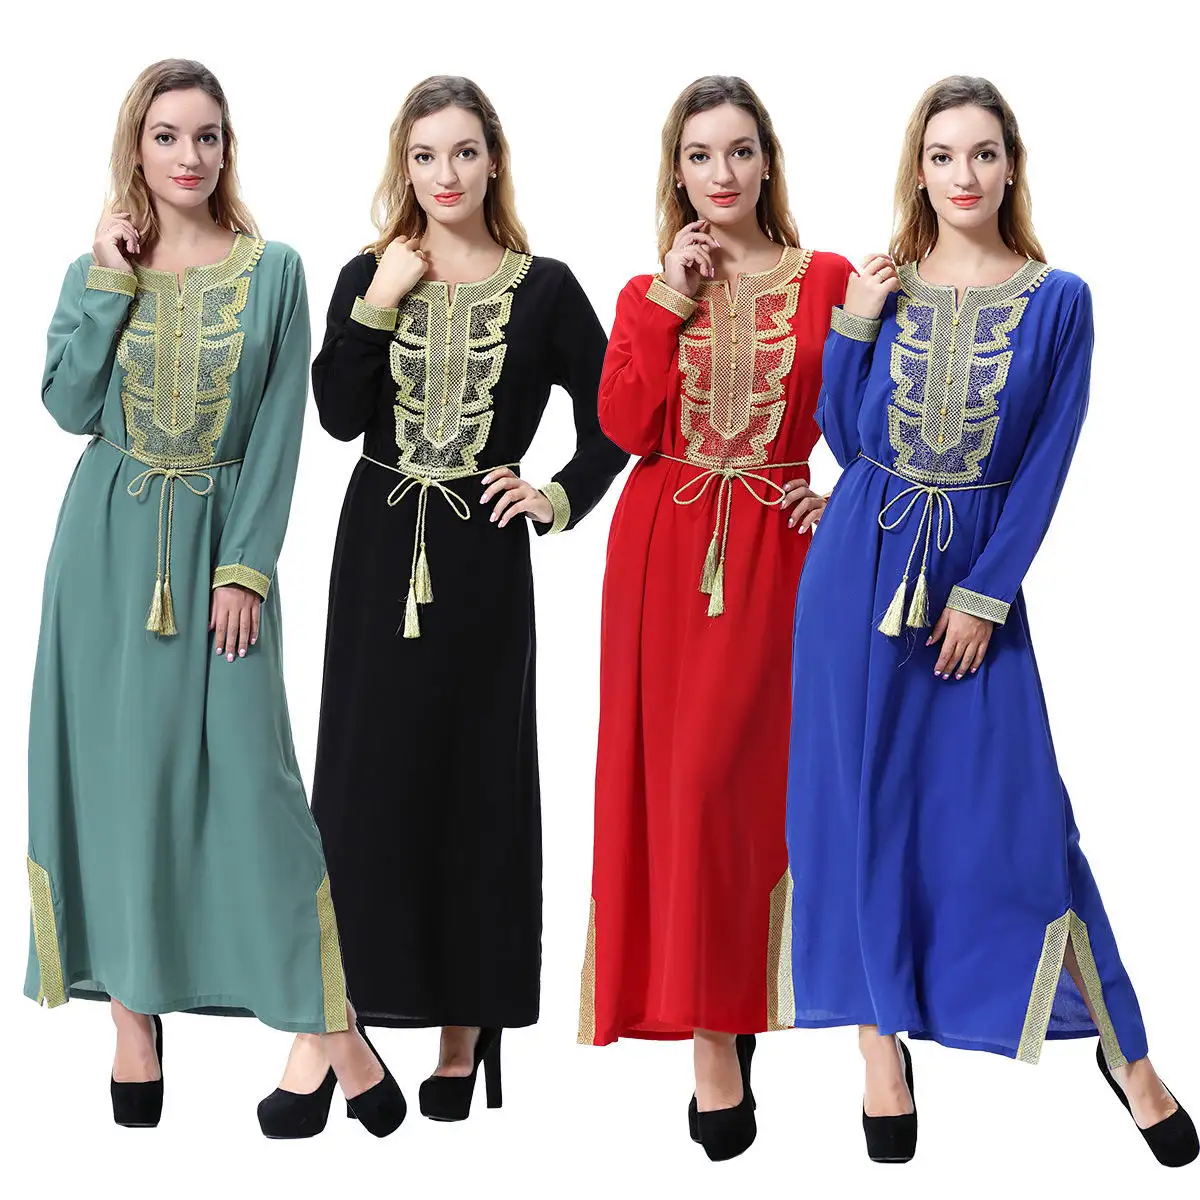 新しい婦人服イスラム教徒マレーインドネシアスーツファッションスカートと長袖ブラウス